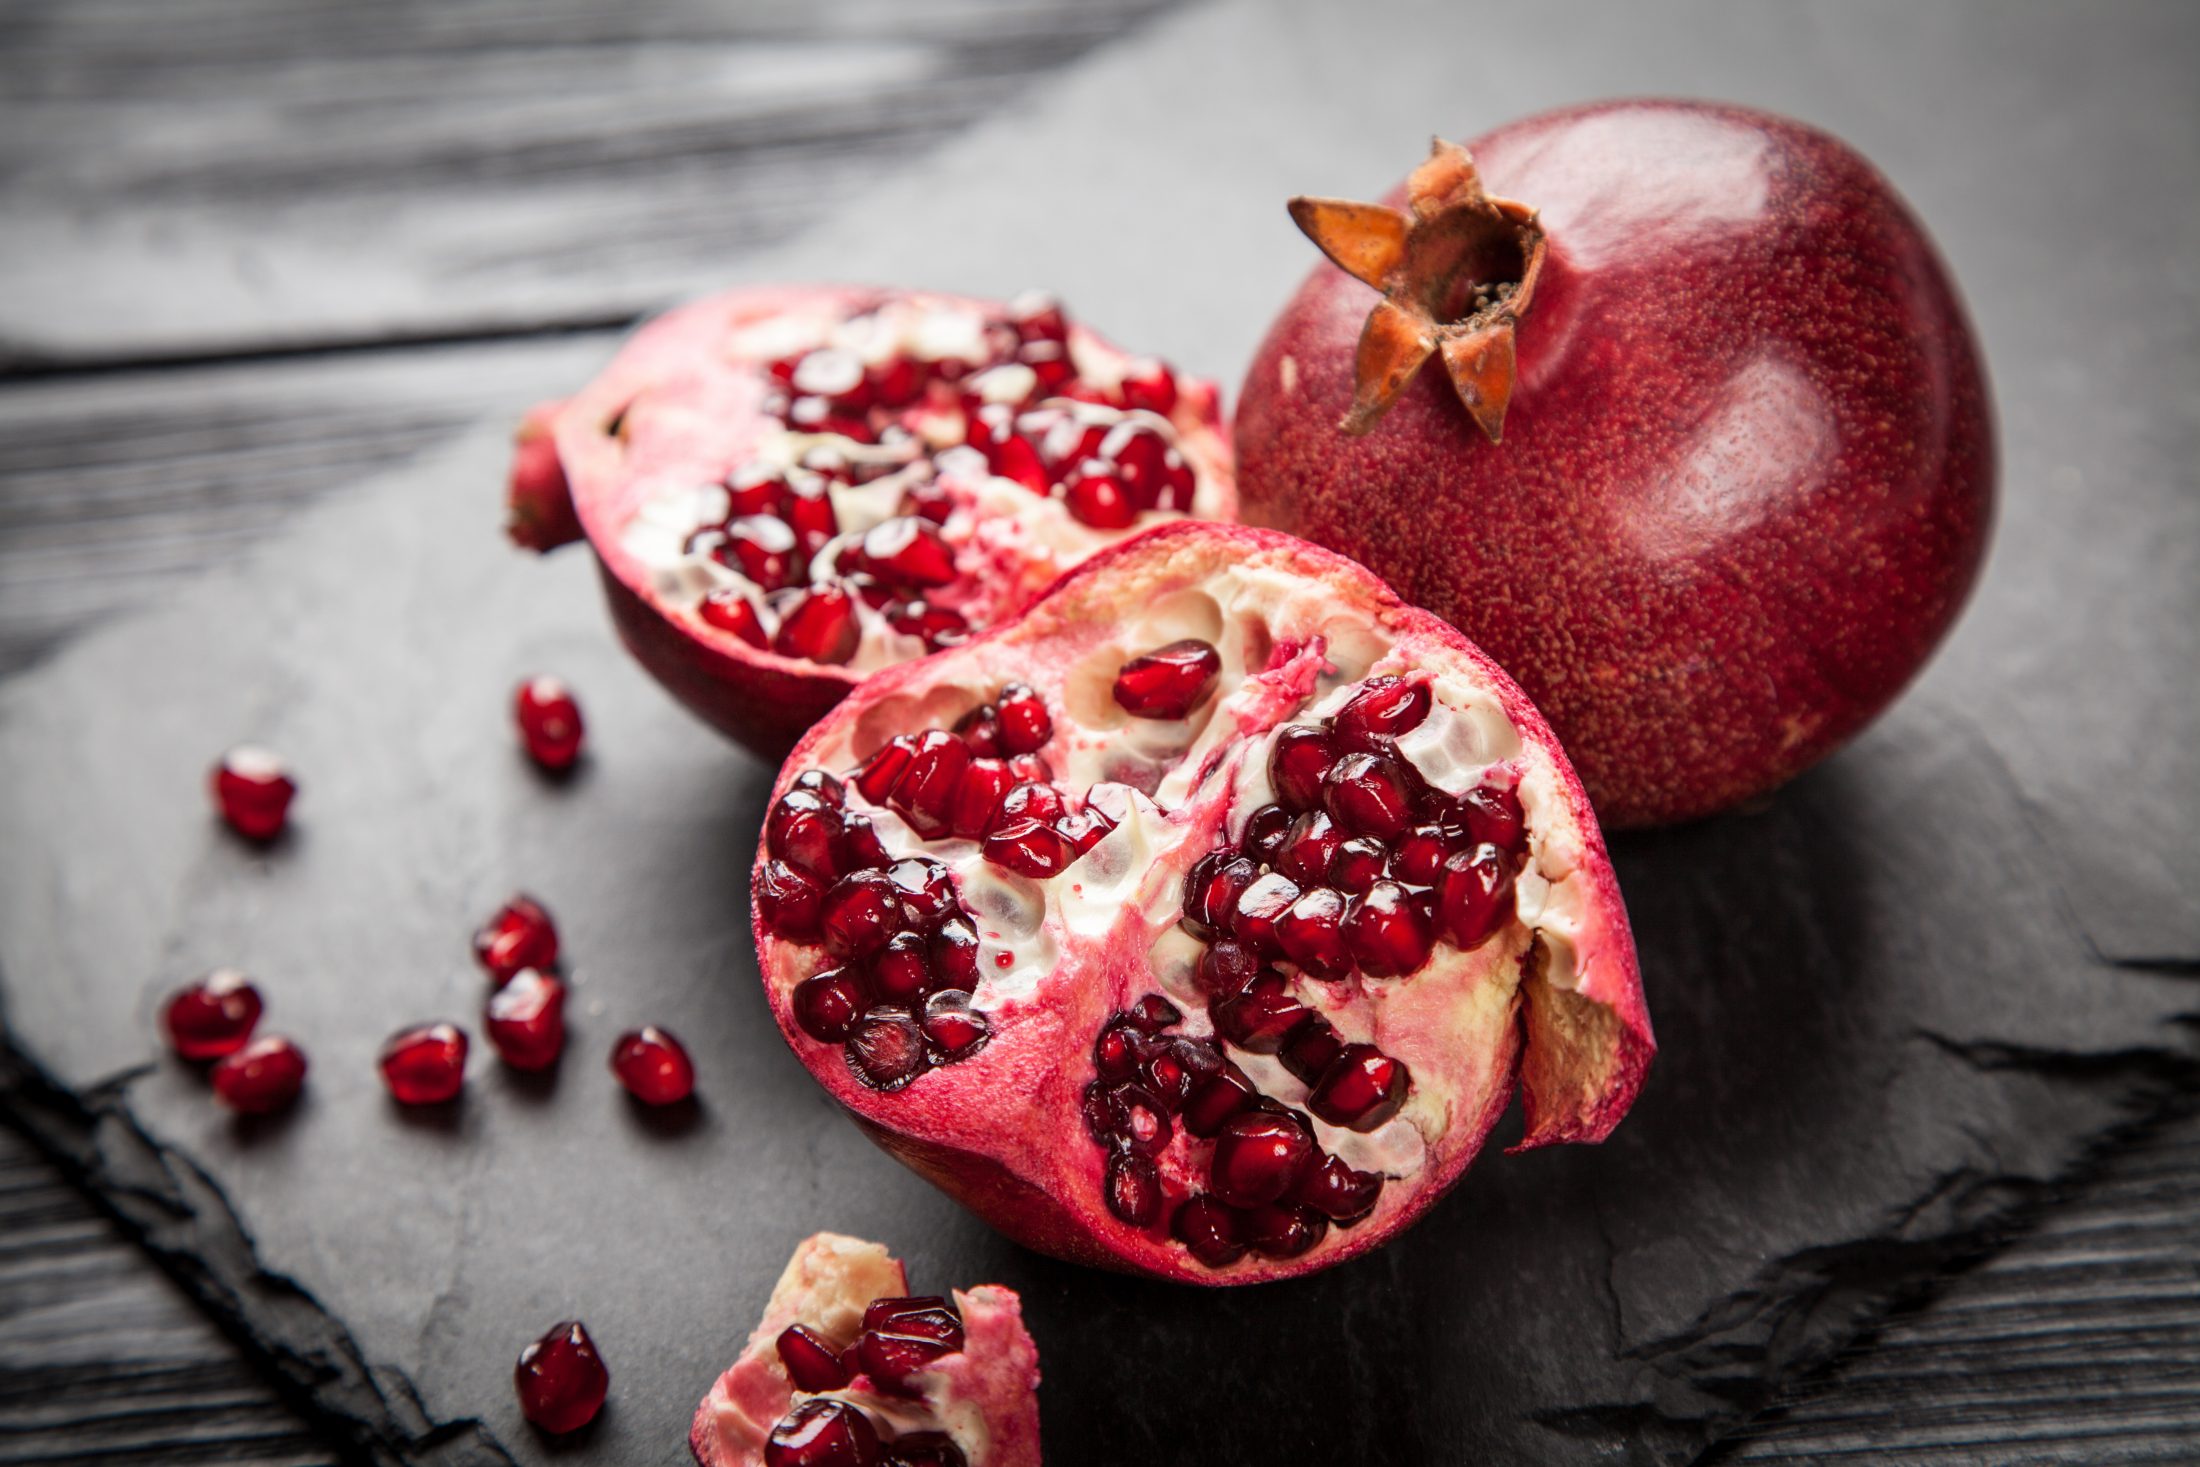 Gránátalma, a misztikus gyümölcs: A gránátalma a tányéron túl - Dining Guide